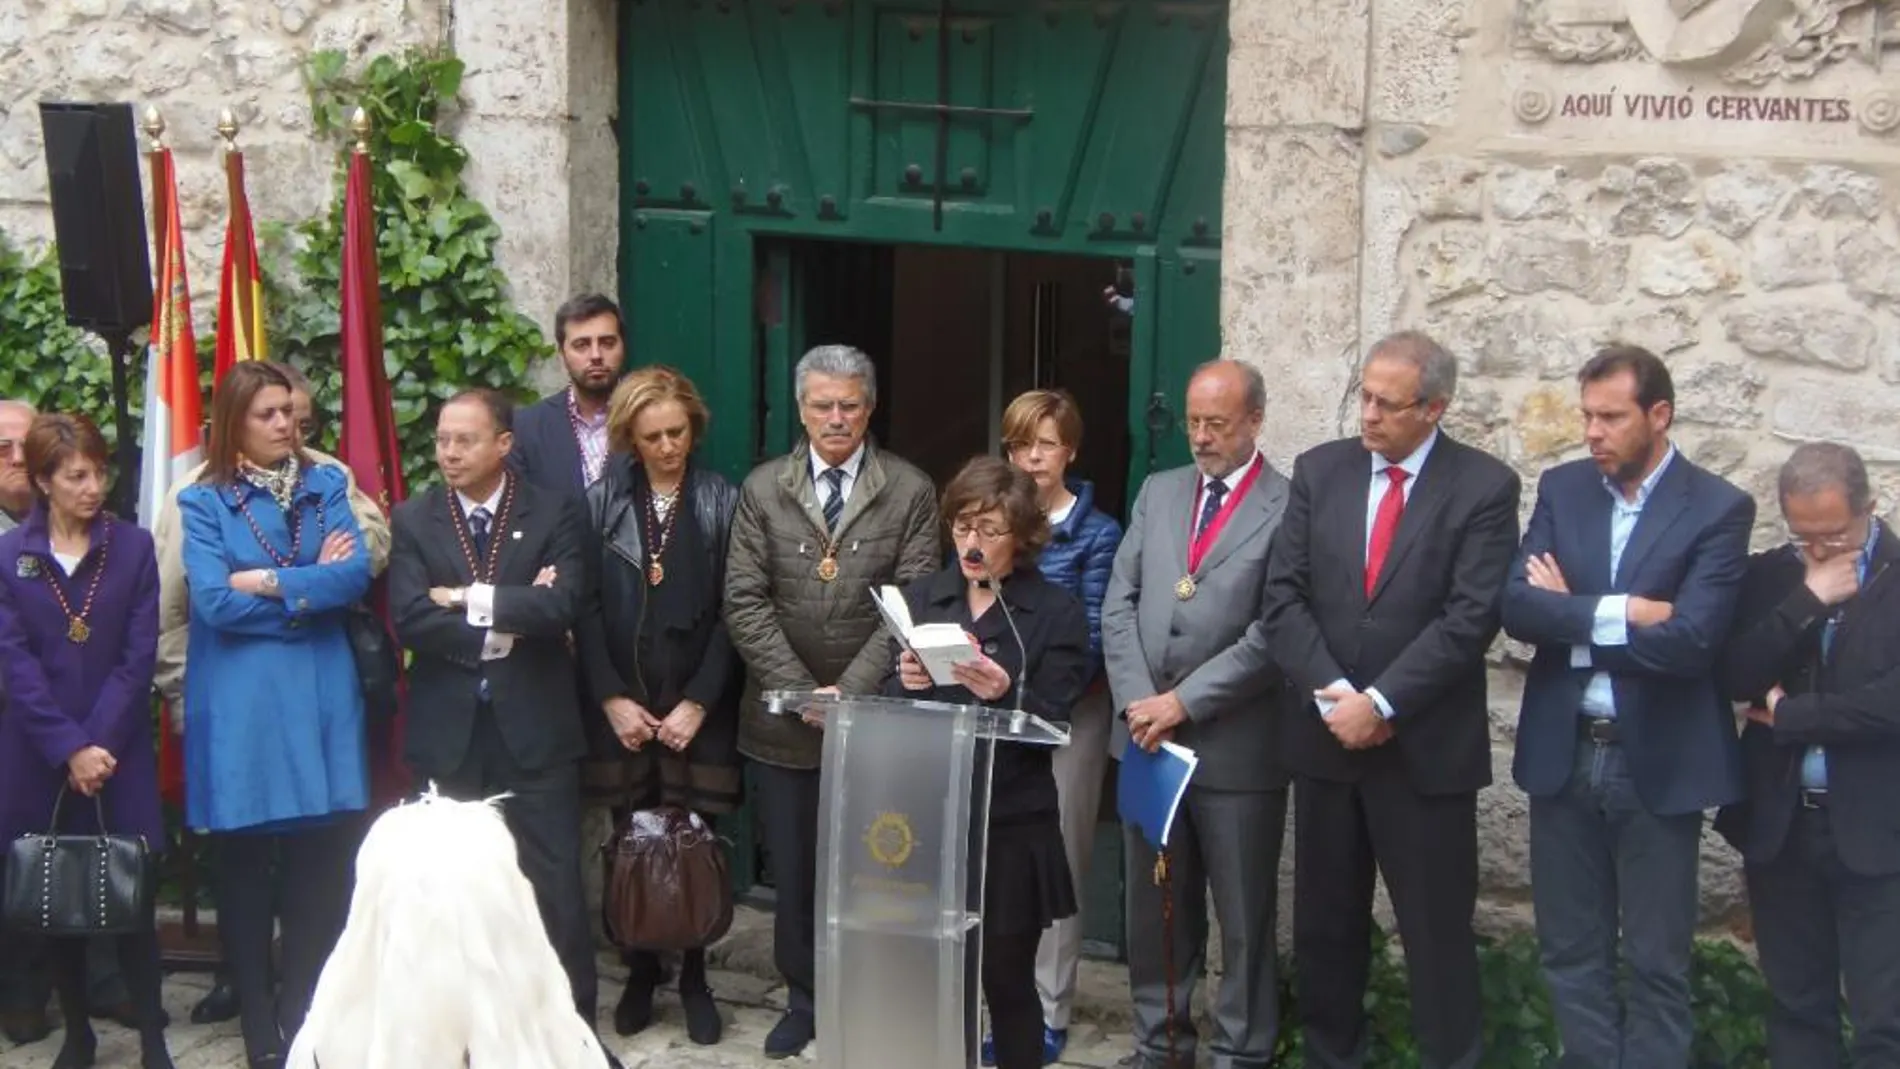 Valladolid rinde homenaje a Cervantes, El Greco y a García Márquez